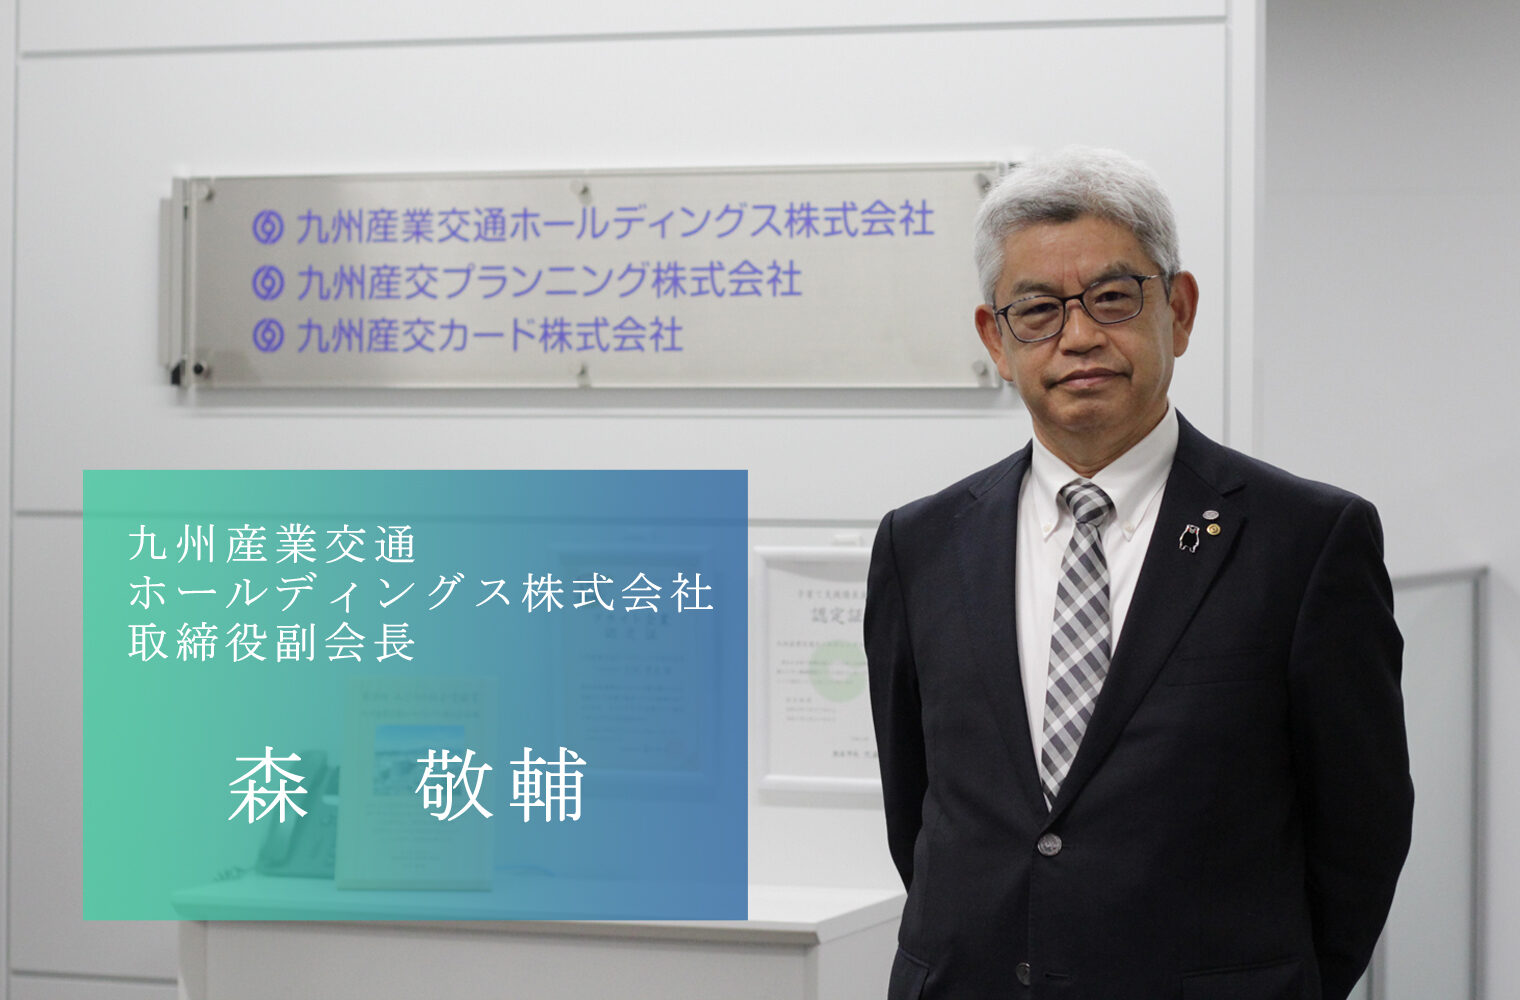 「サクラマチクマモト」を拠点に熊本の活性化に挑む九州産業交通ホールディングス株式会社の森副会長